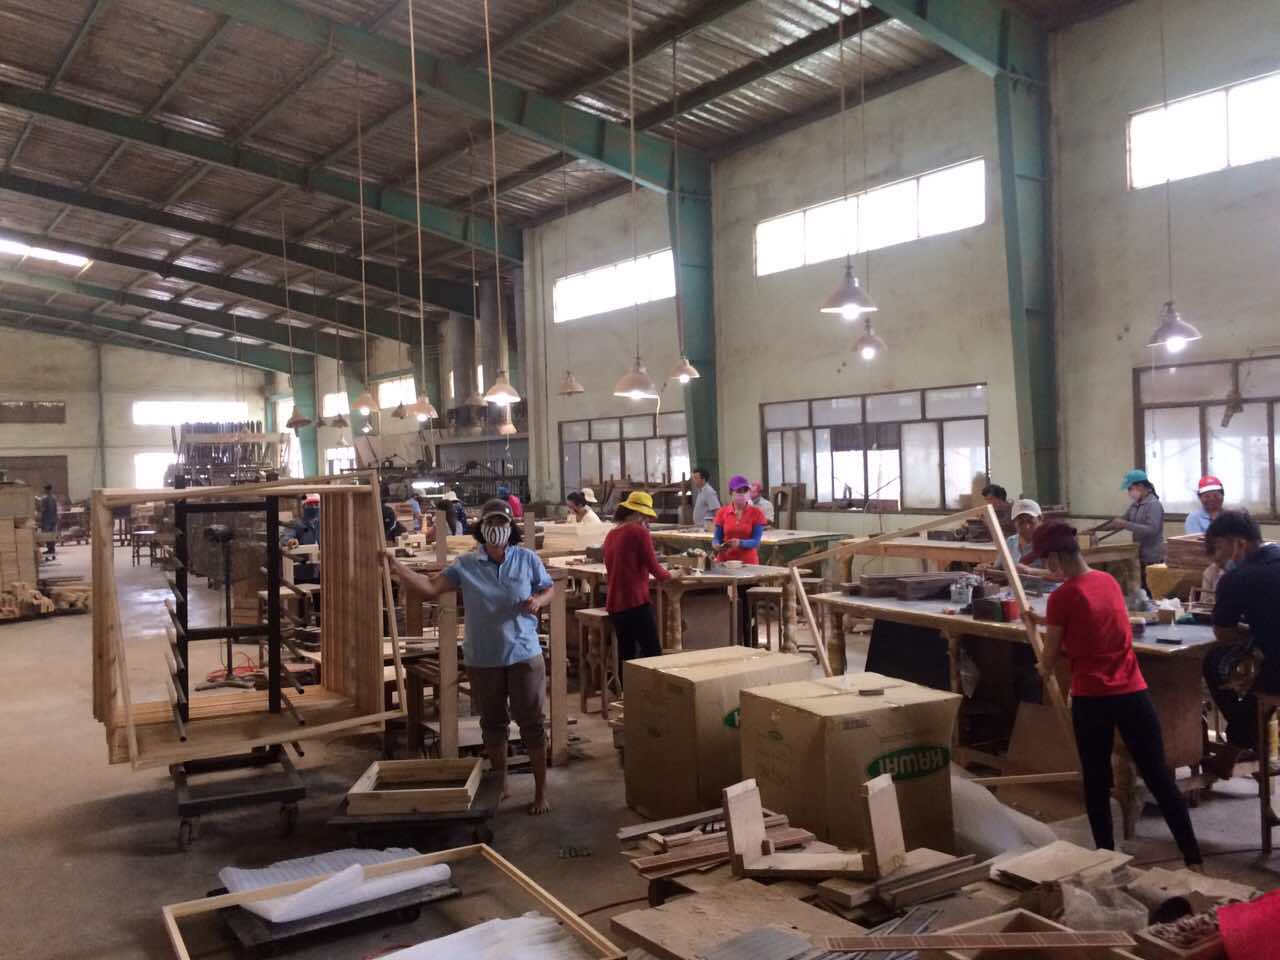 xưởng mộc, xưởng mộc gần đây, xưởng mộc làm theo yêu cầu, xưởng gỗ, xưởng gỗ gần đây, xưởng gỗ công nghiệp, xưởng gỗ tphcm